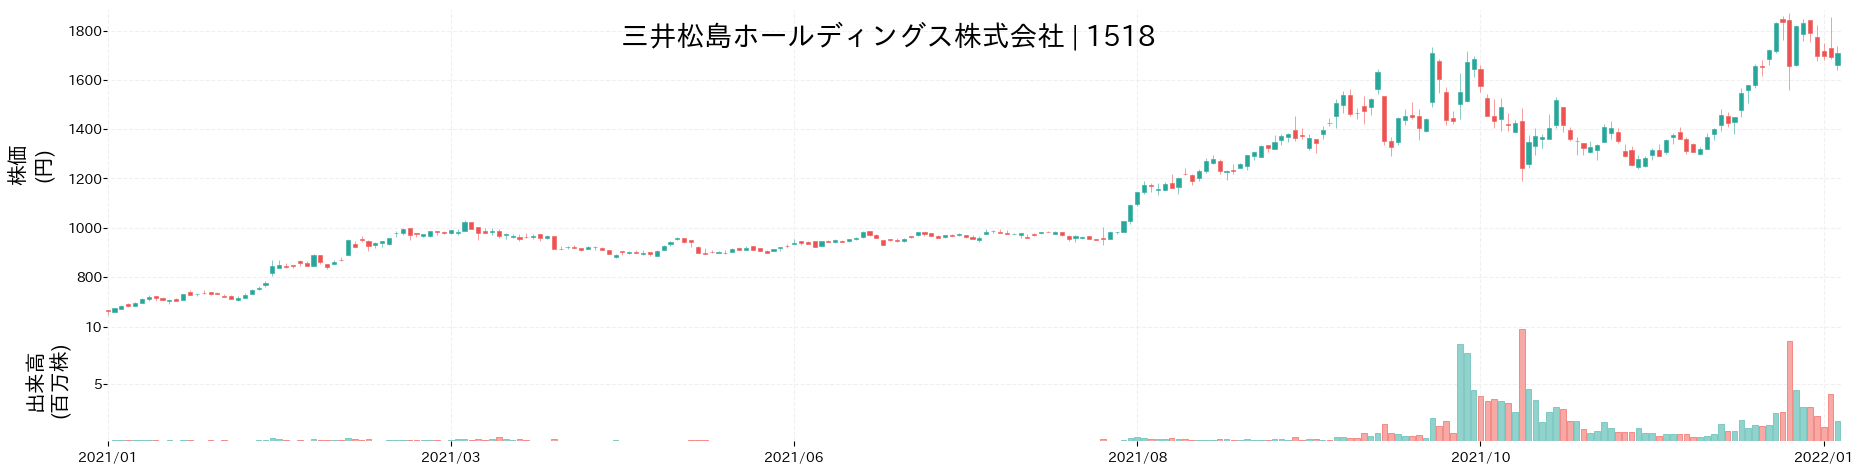 三井松島ホールディングスの株価推移(2021)